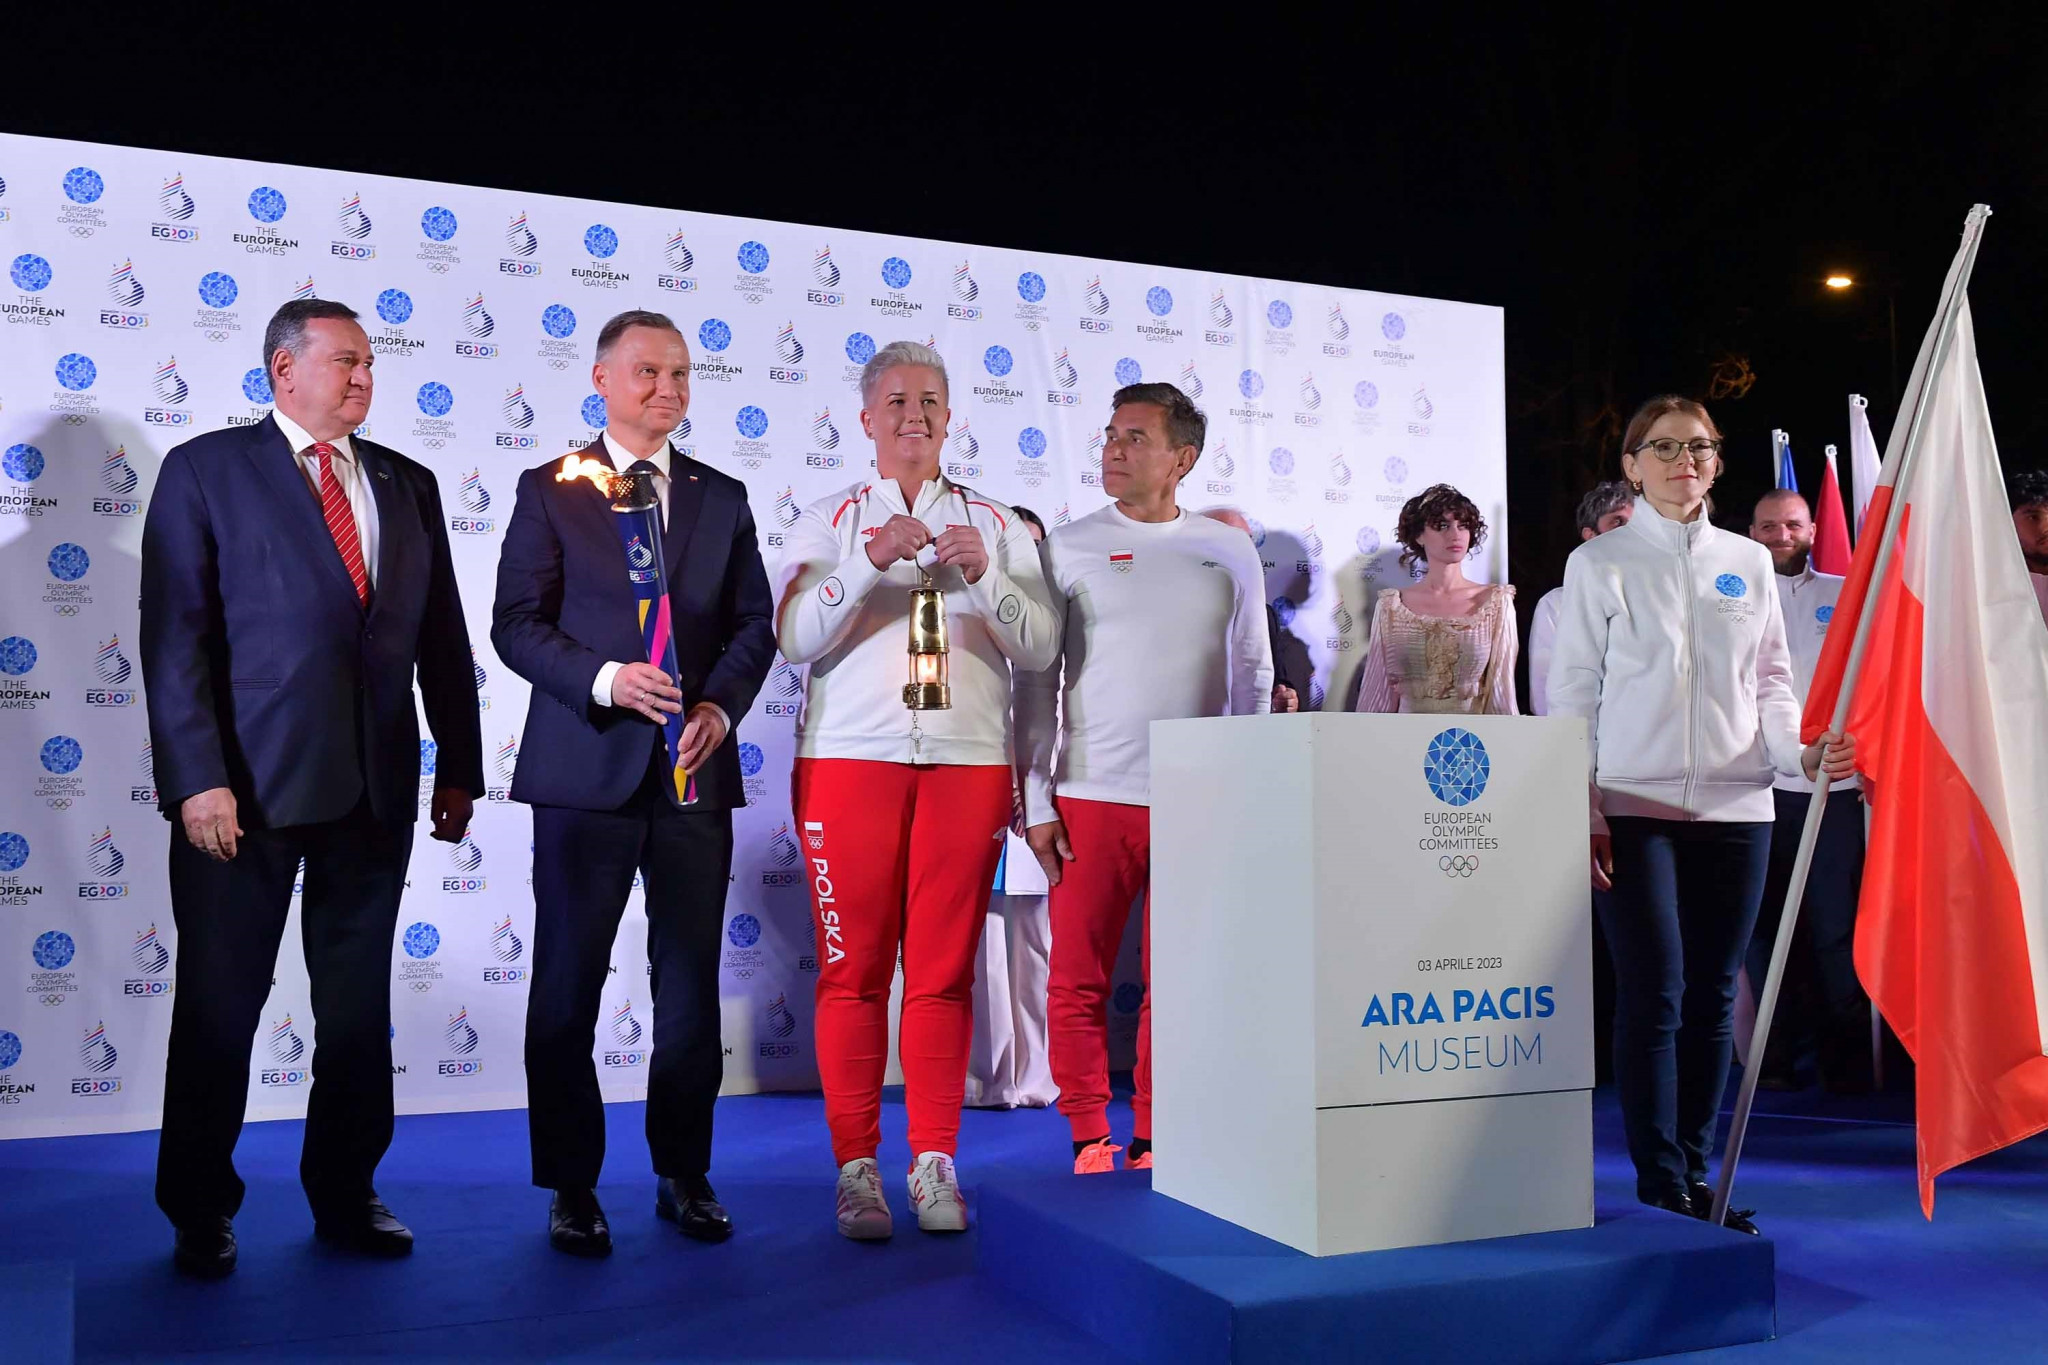 Polish Olympic champions Włodarczyk and Korzeniowski receive Flame of Peace at ceremony in Rome